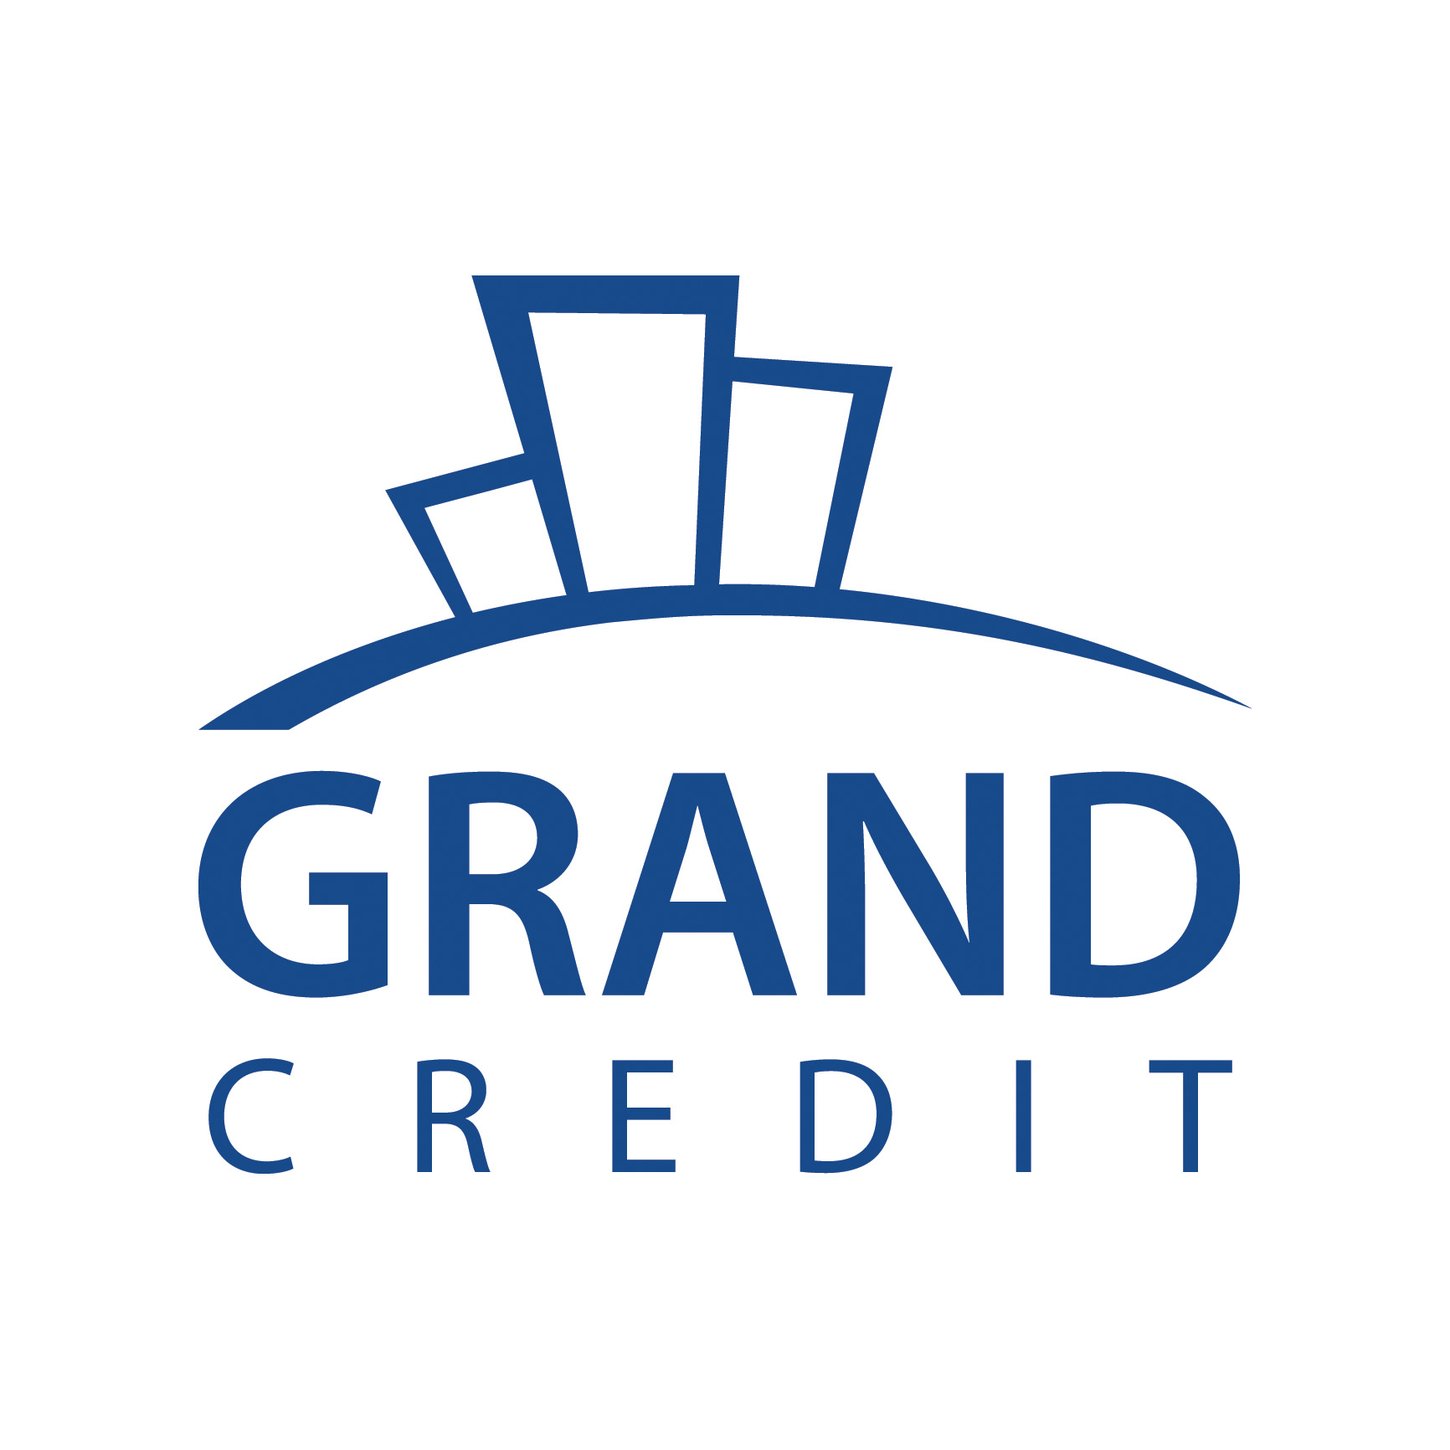 Grand Credit финансирует эконом-класс